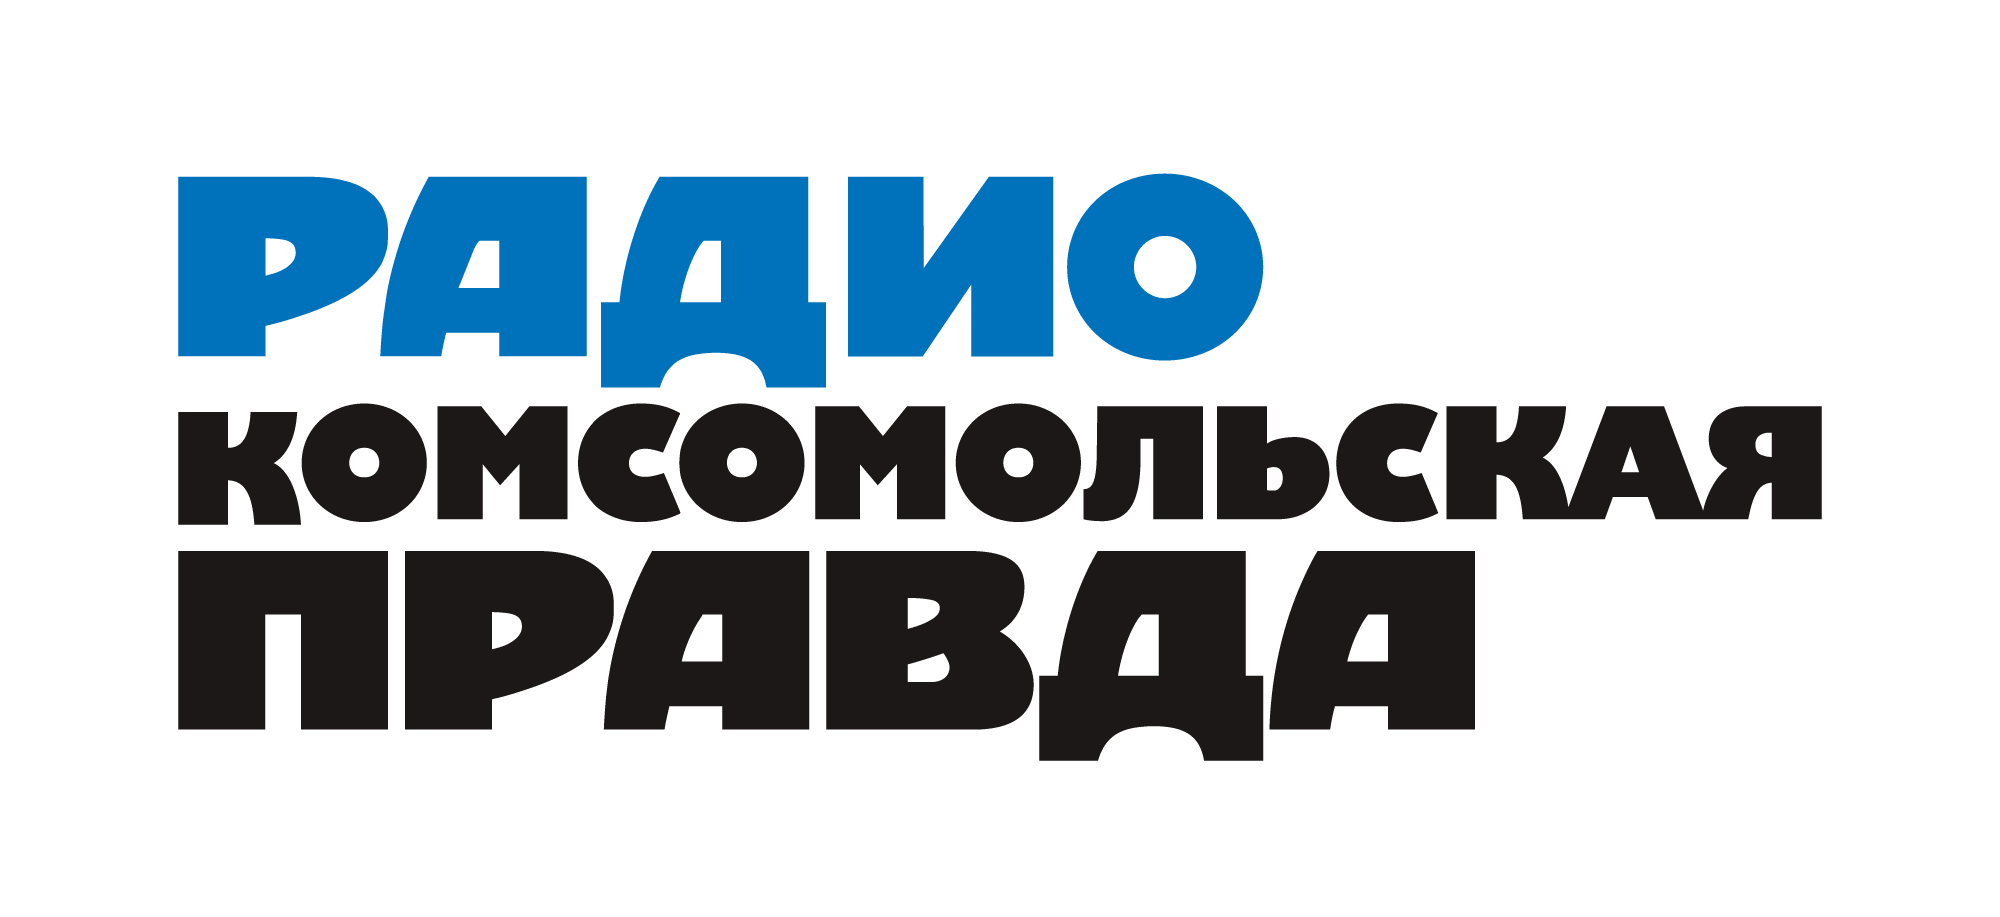 Комсомольская правда 107.7 FM, г.Севастополь